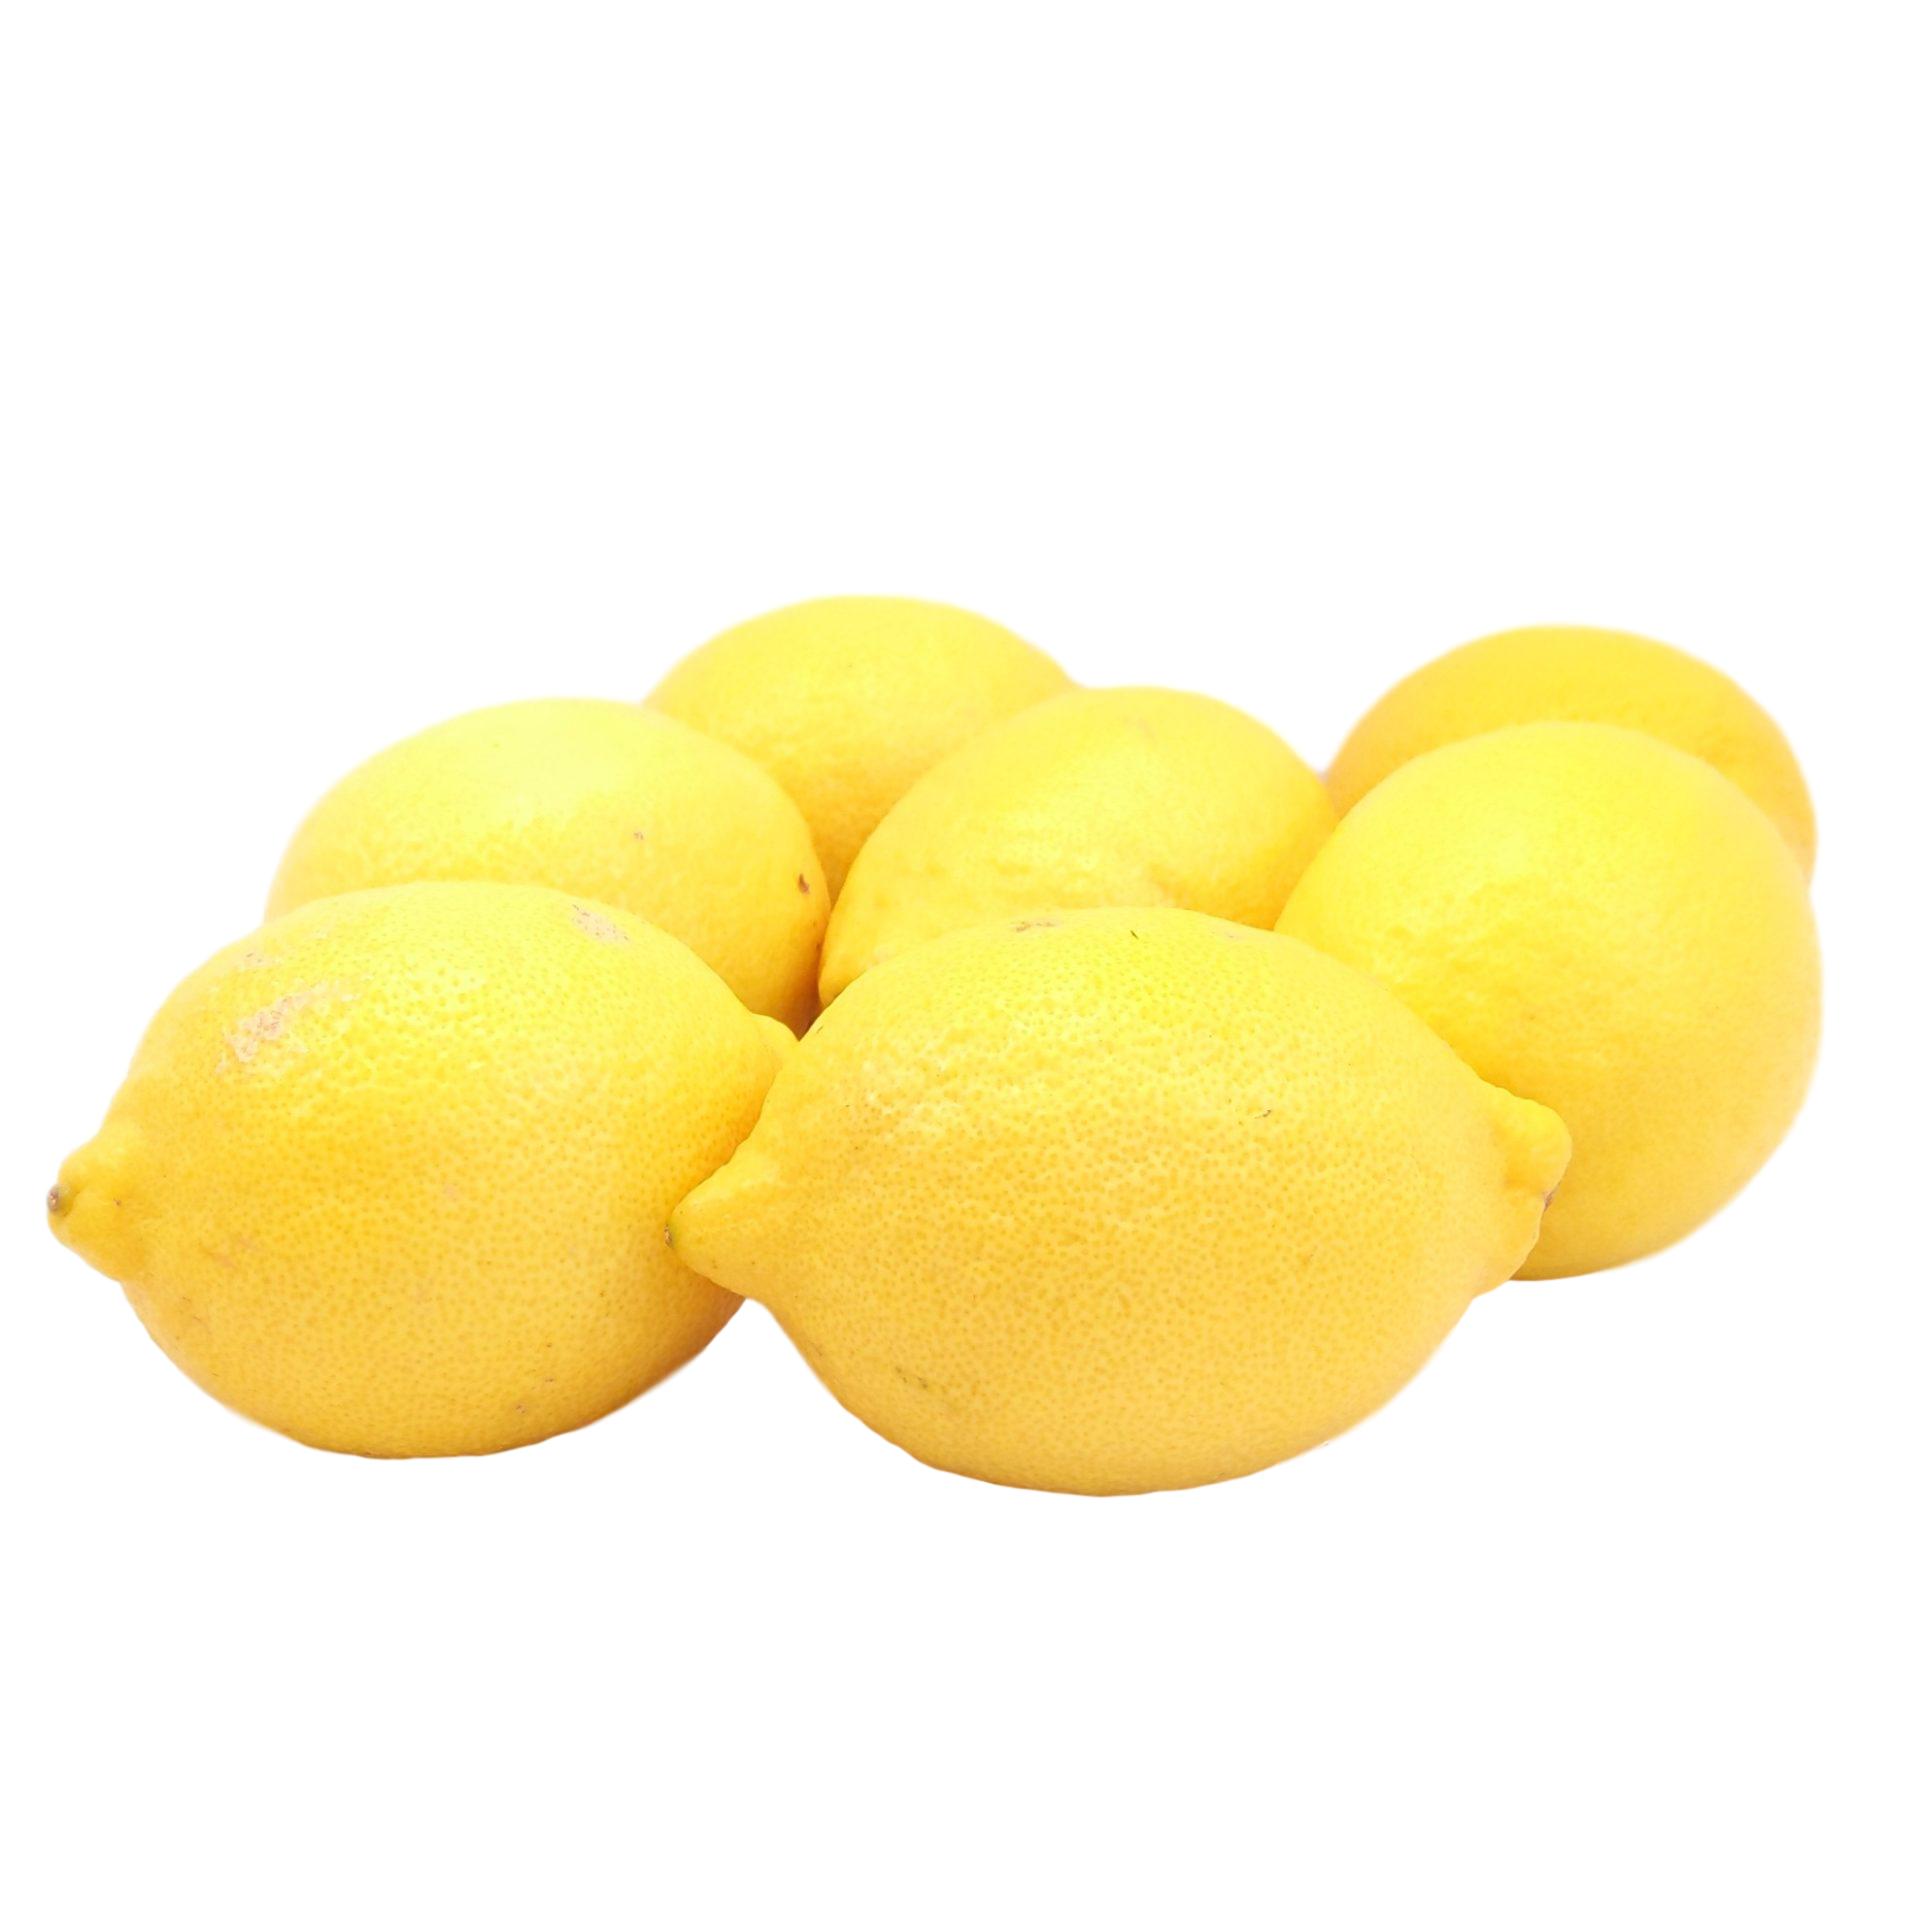 Bio Zitronen online kaufen & bestellen » Bio Grauer Shop